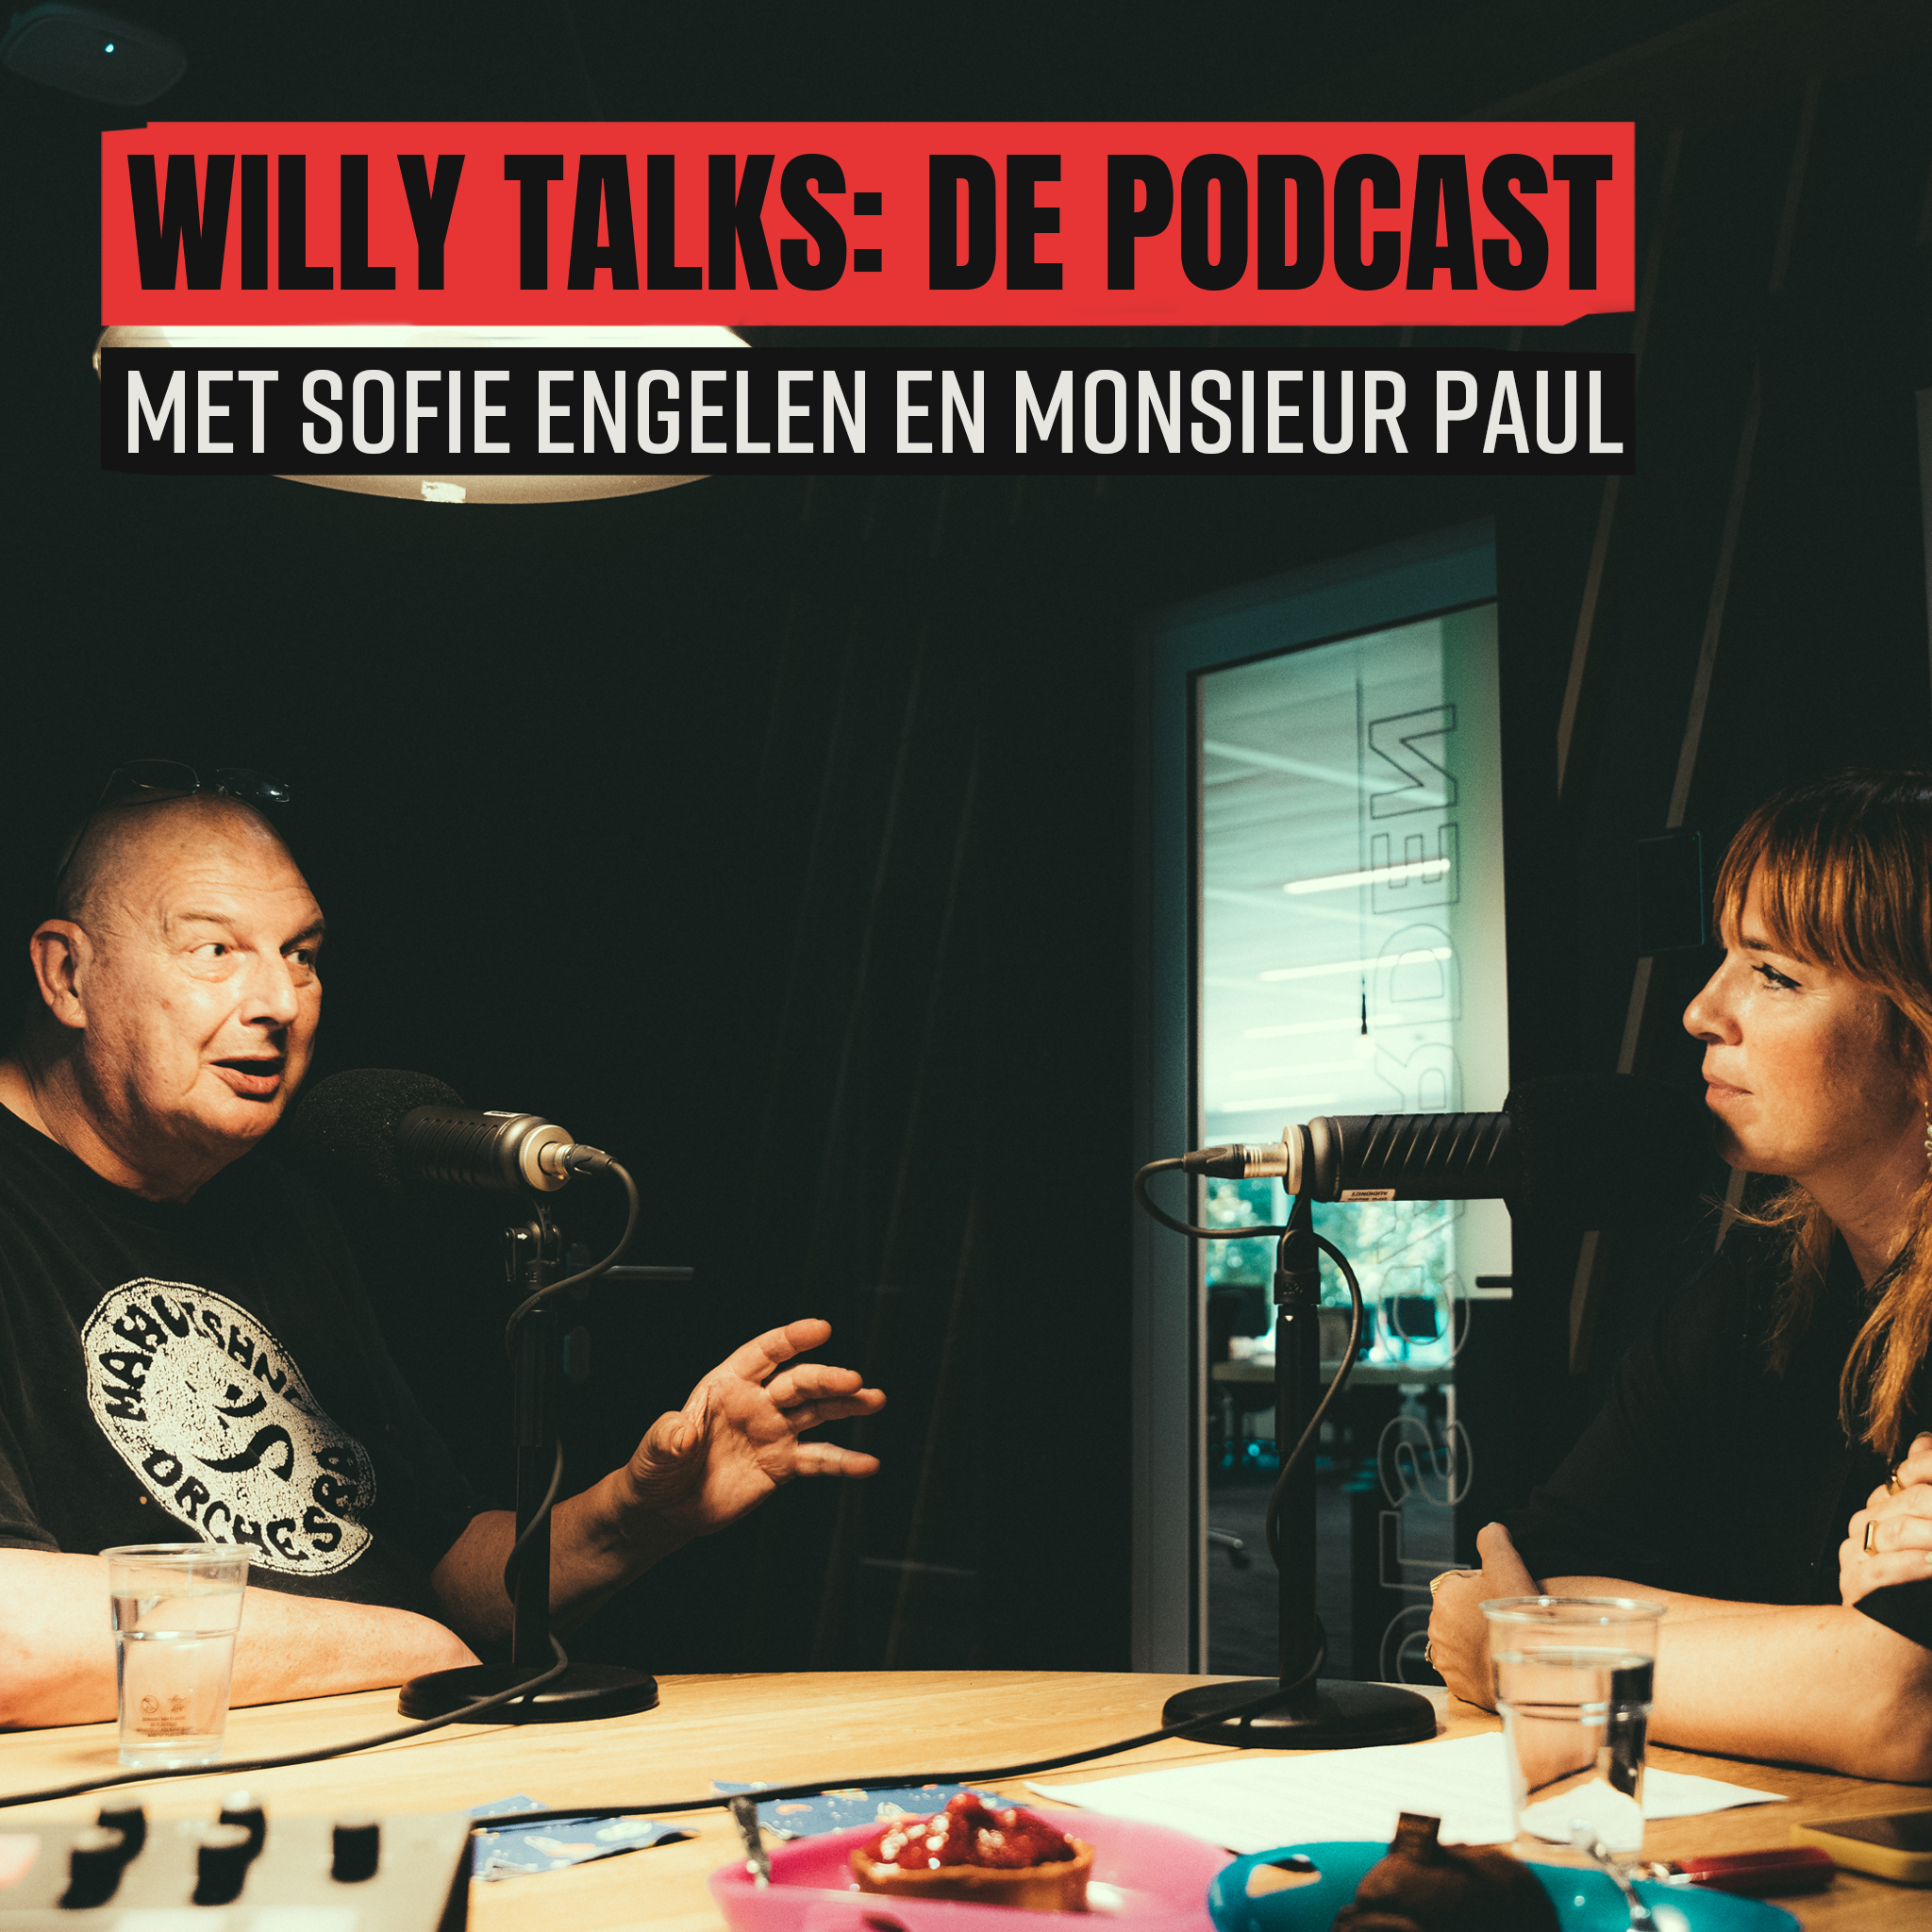 Willy talks  de podcast met lange polle